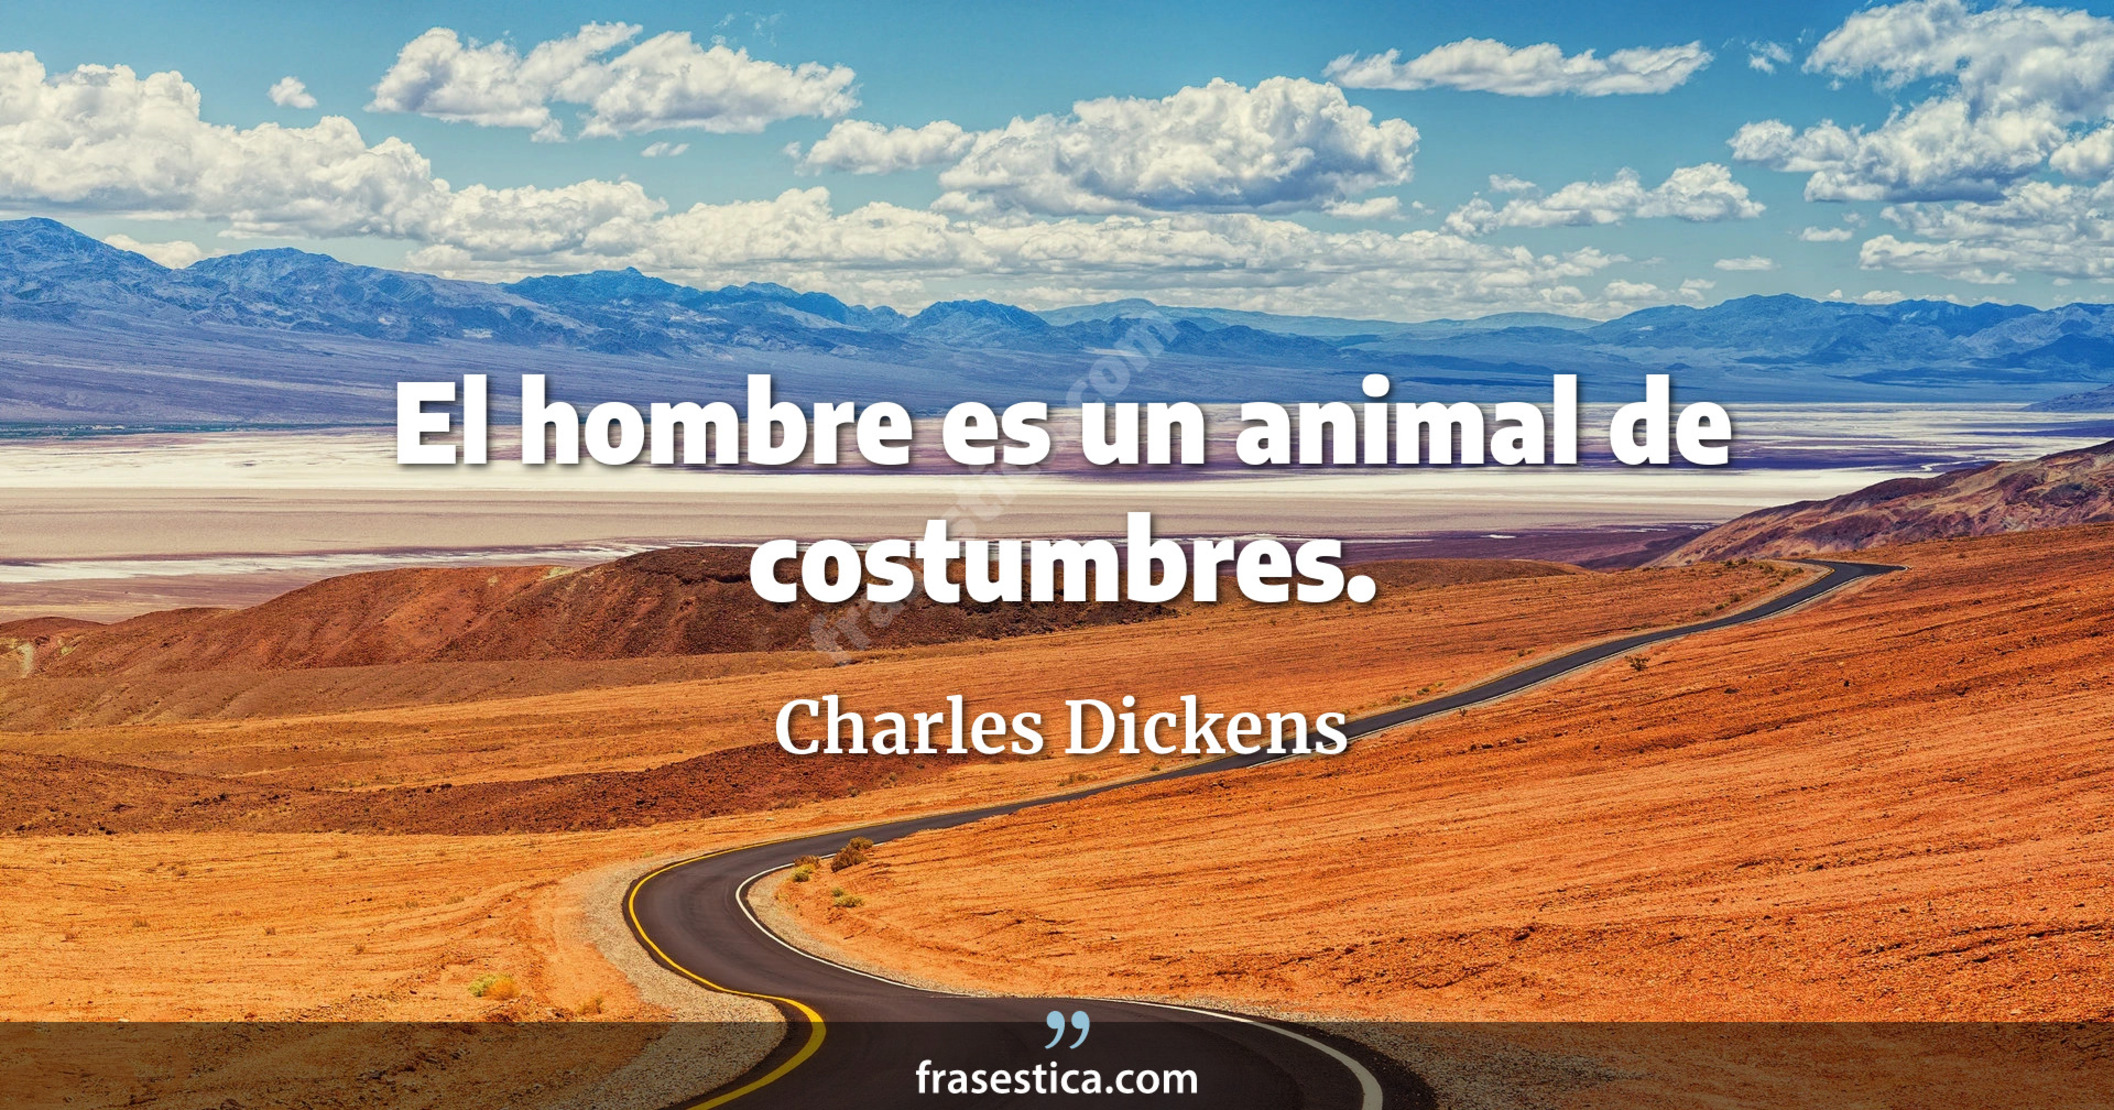 El hombre es un animal de costumbres. - Charles Dickens